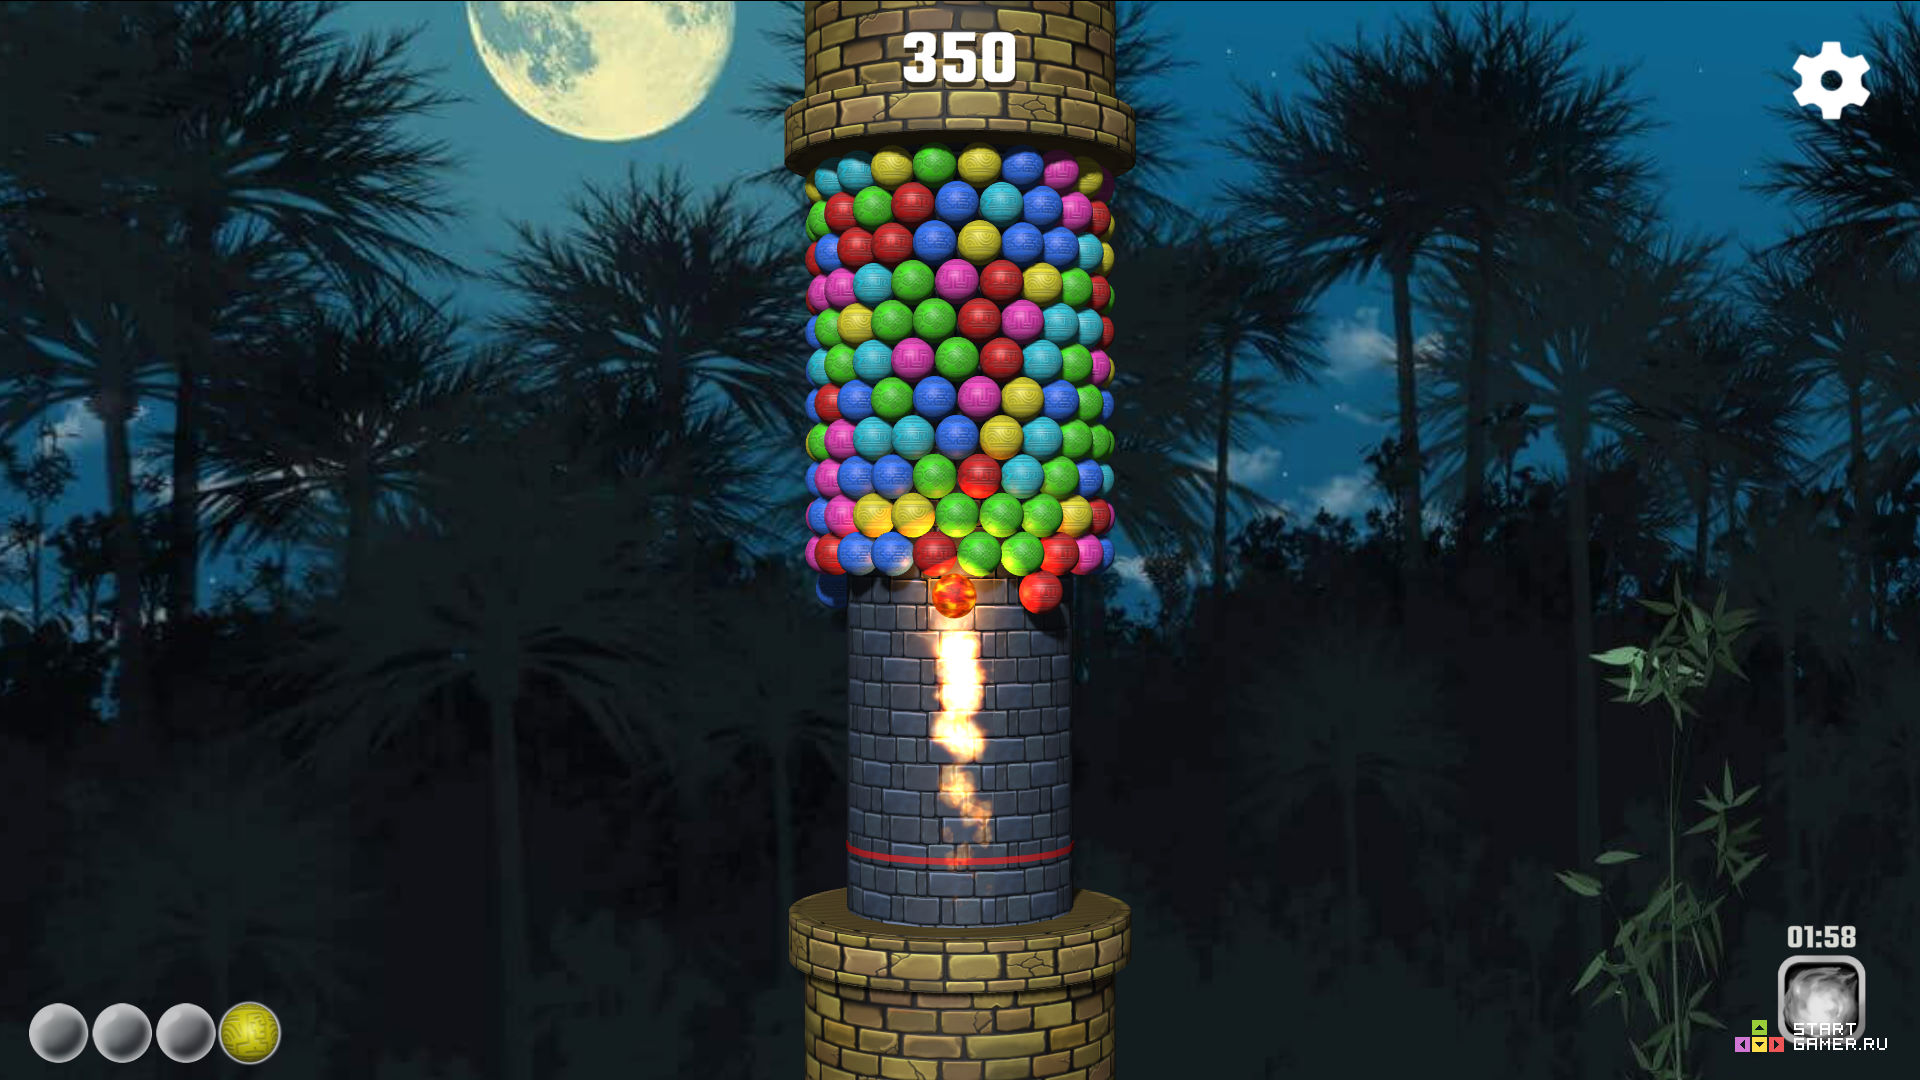 Башня 3 д играть. Башня каланча игра. Башня шариков игра. Башенки с шариками. Игра шарики на башне.